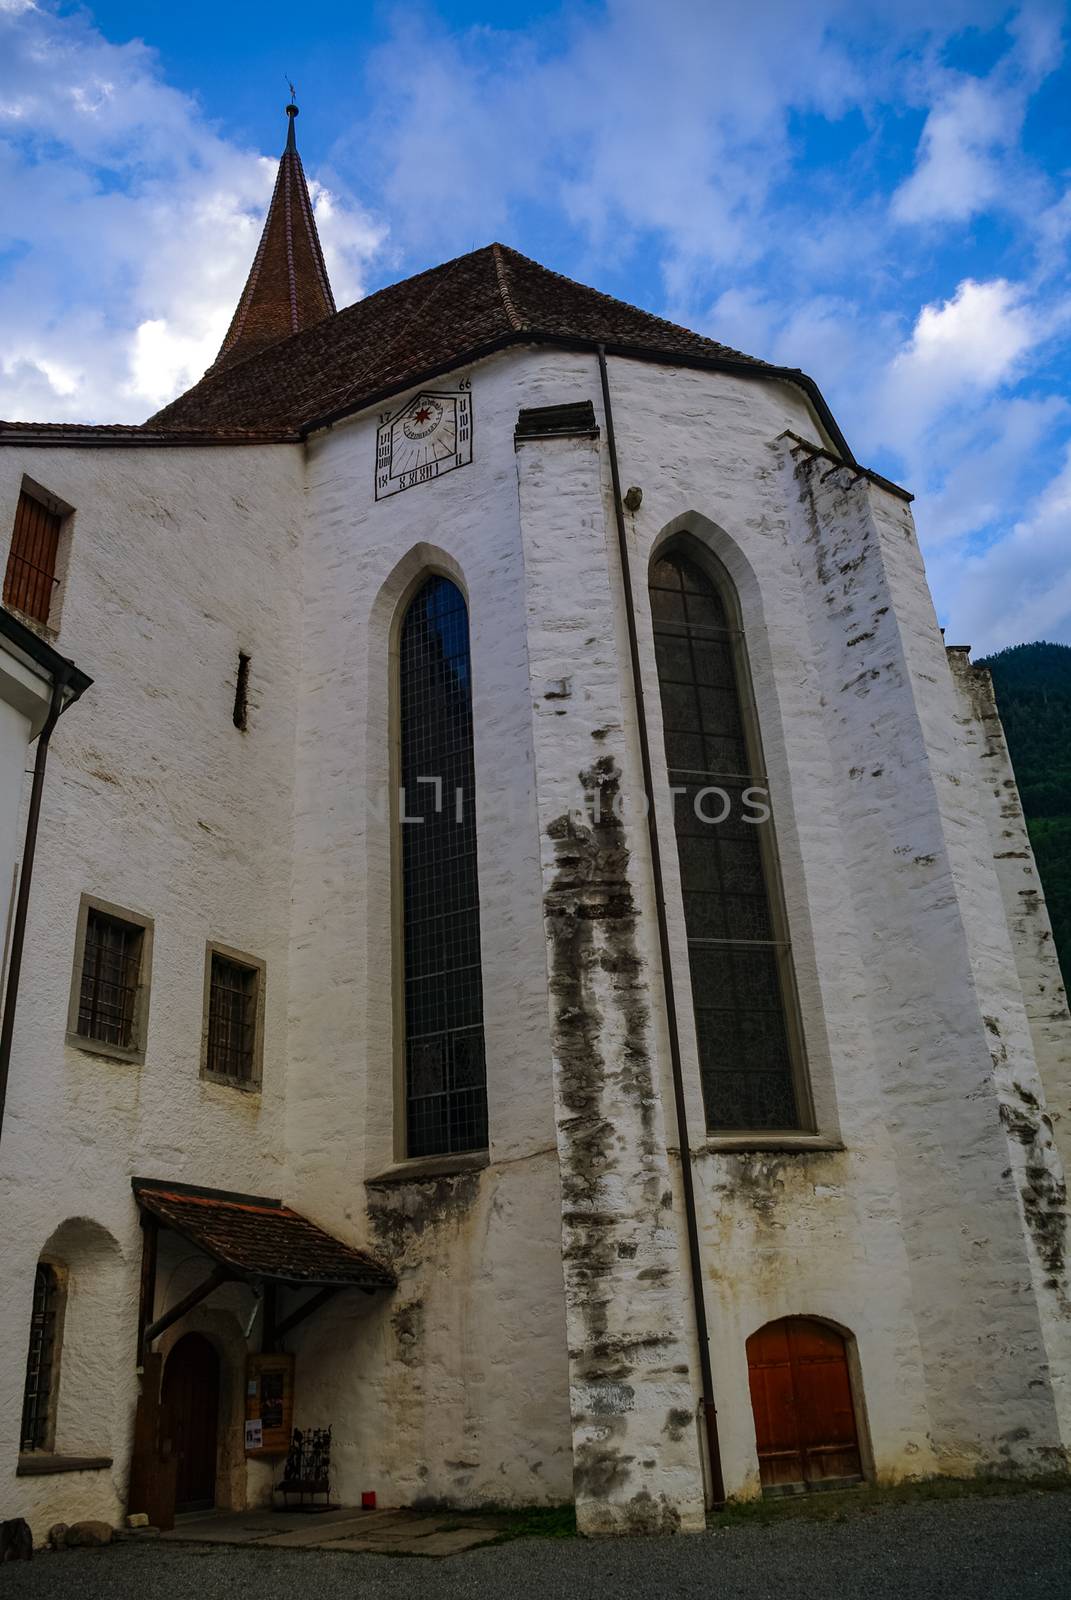 Castle church Schlosskirche and museum Schloss. Interlaken, Switzerland